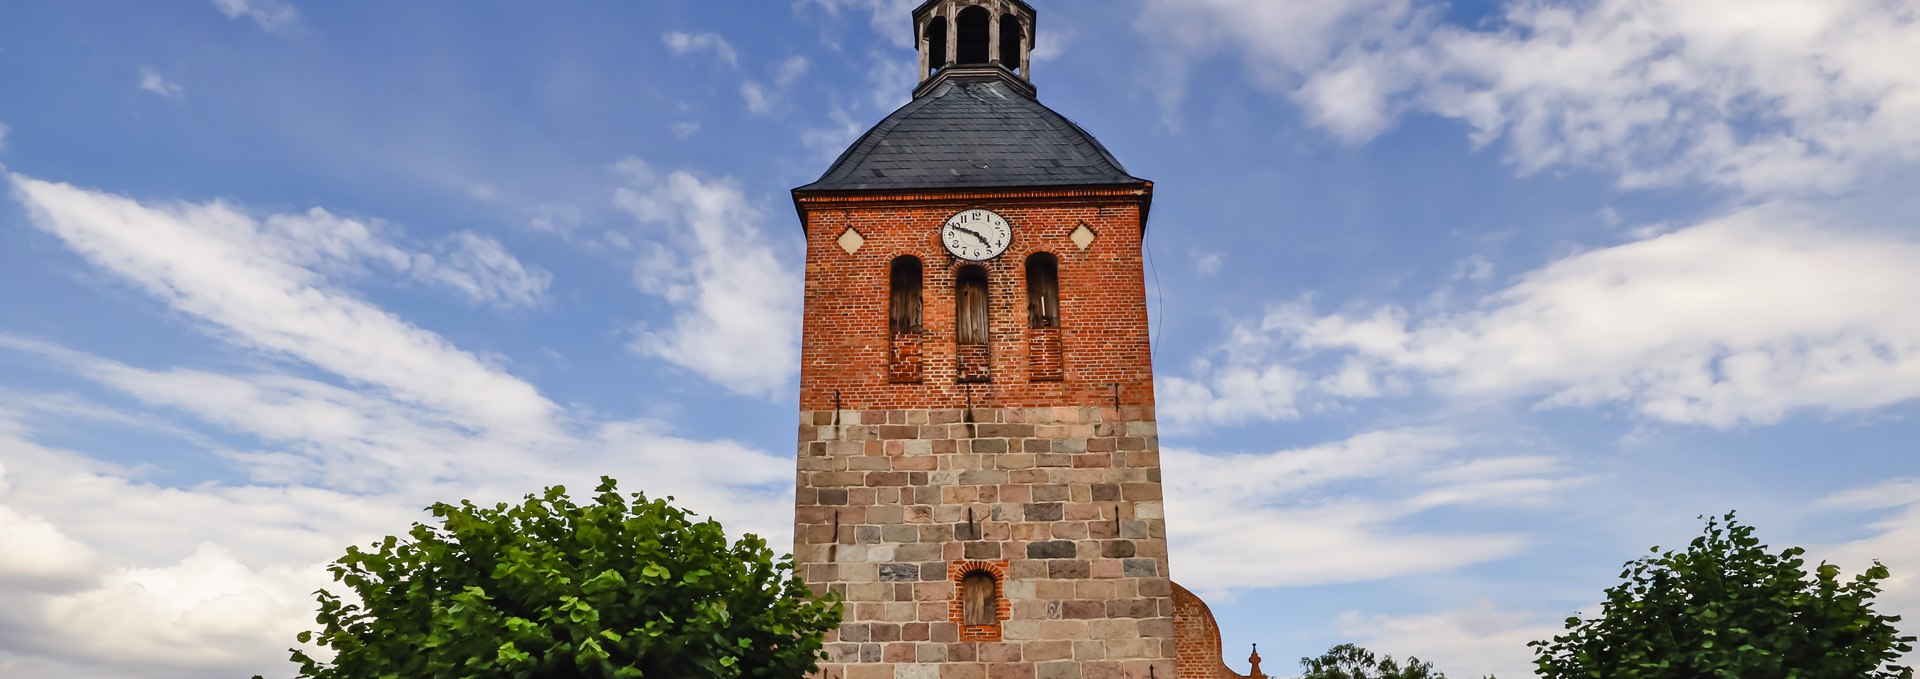 Dorfkirche Bristow_2, © TMV/Gohlke